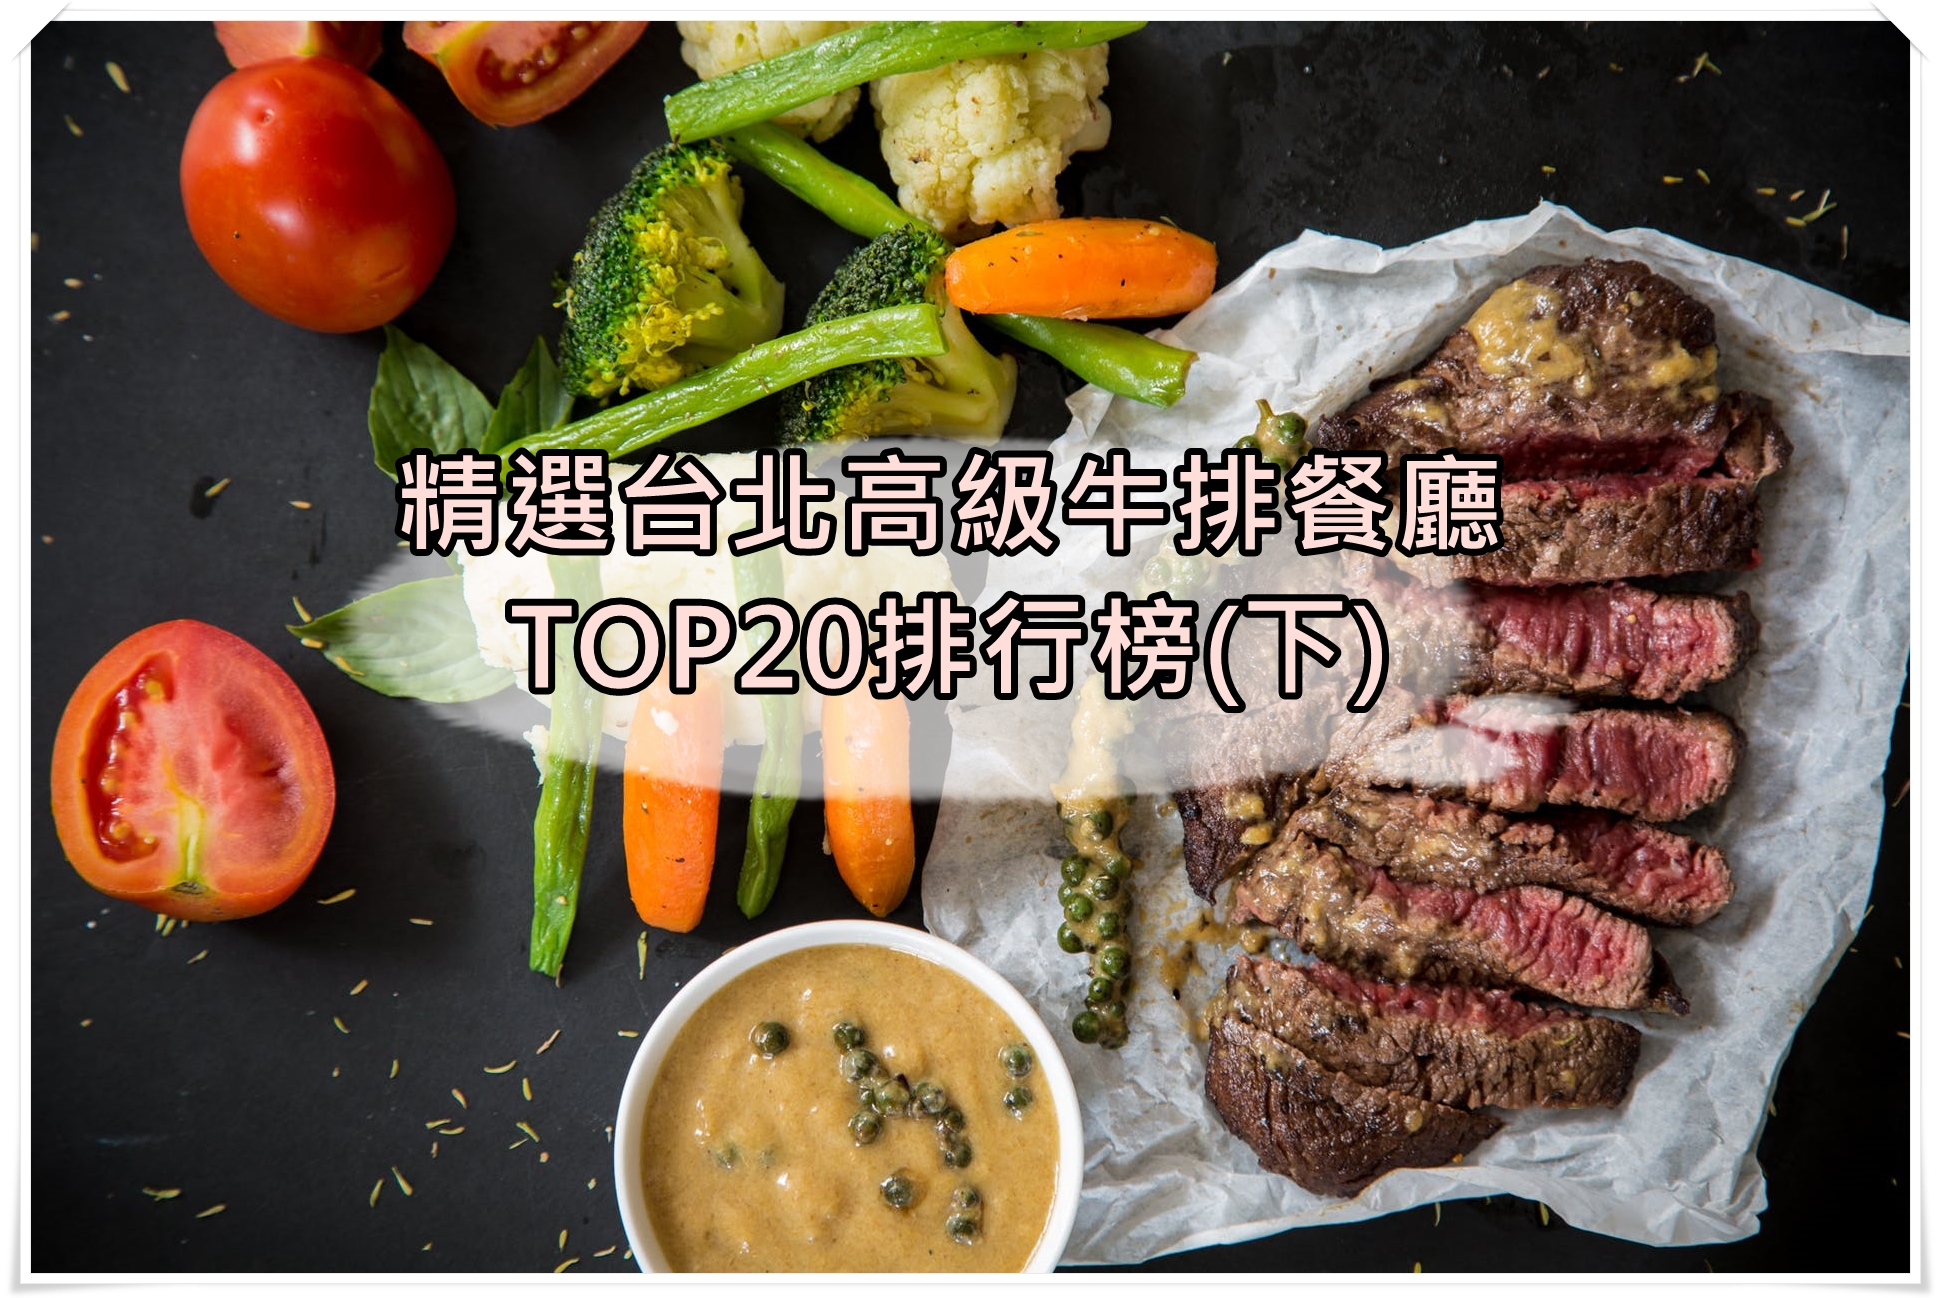 最完整台北按摩排行榜TOP20推薦 (上)-不老松、33莊園、悅禾莊園SPA @東南亞投資報告